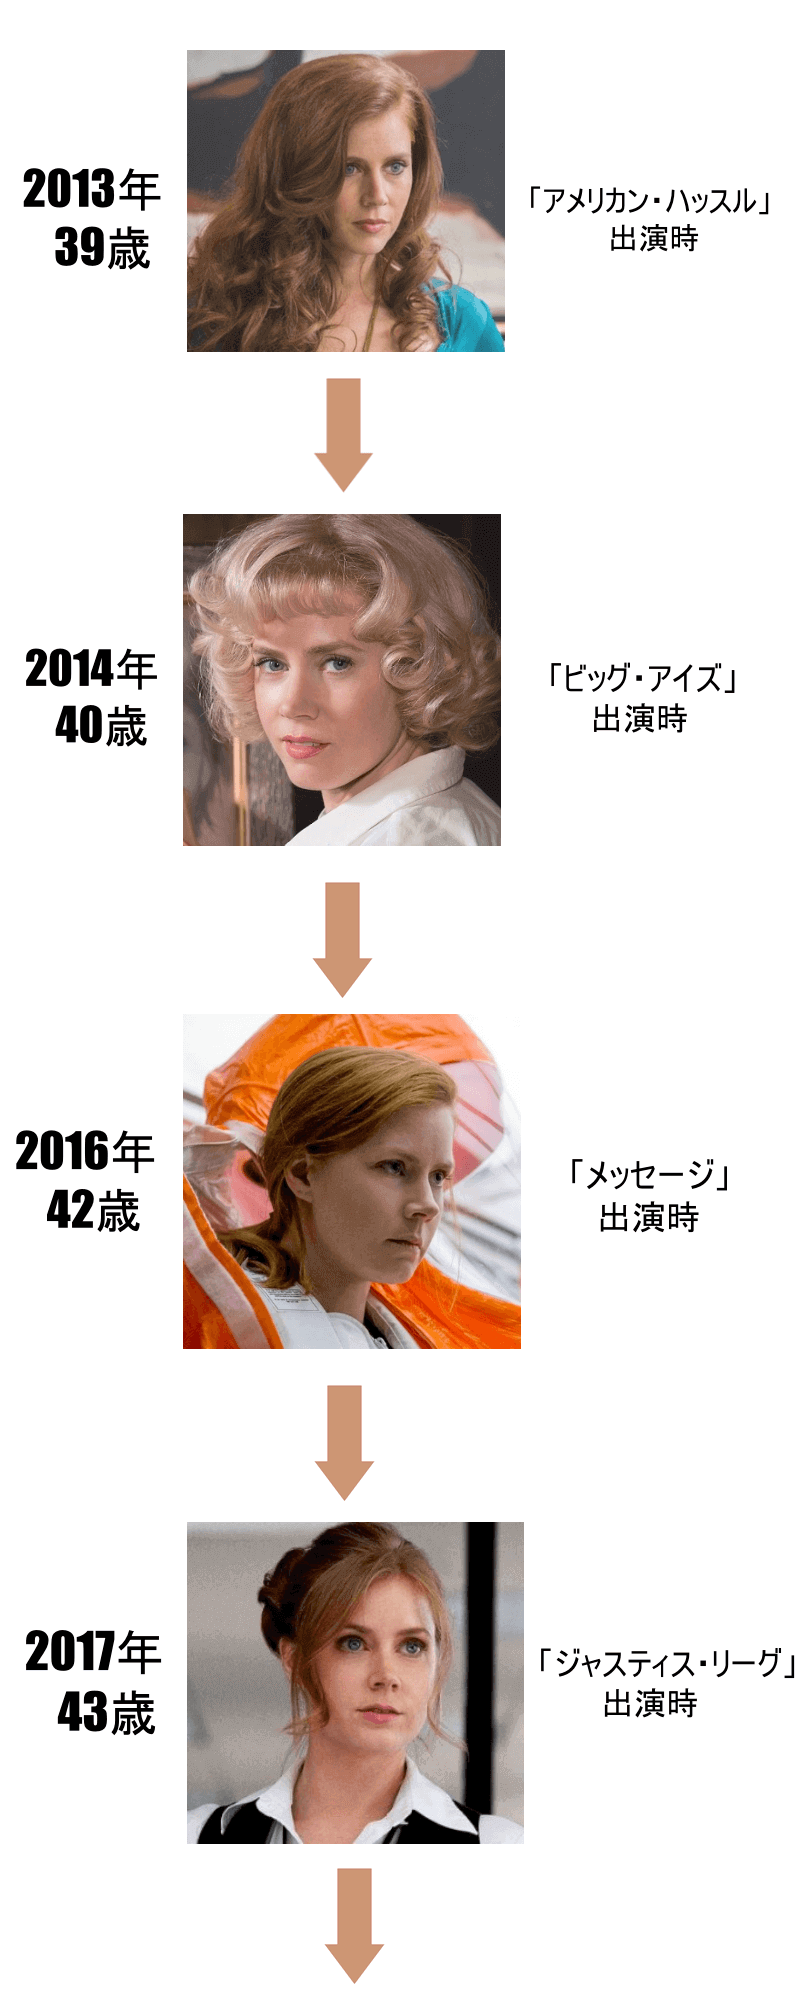 エイミーアダムスの画像年表2013年から2017年まで